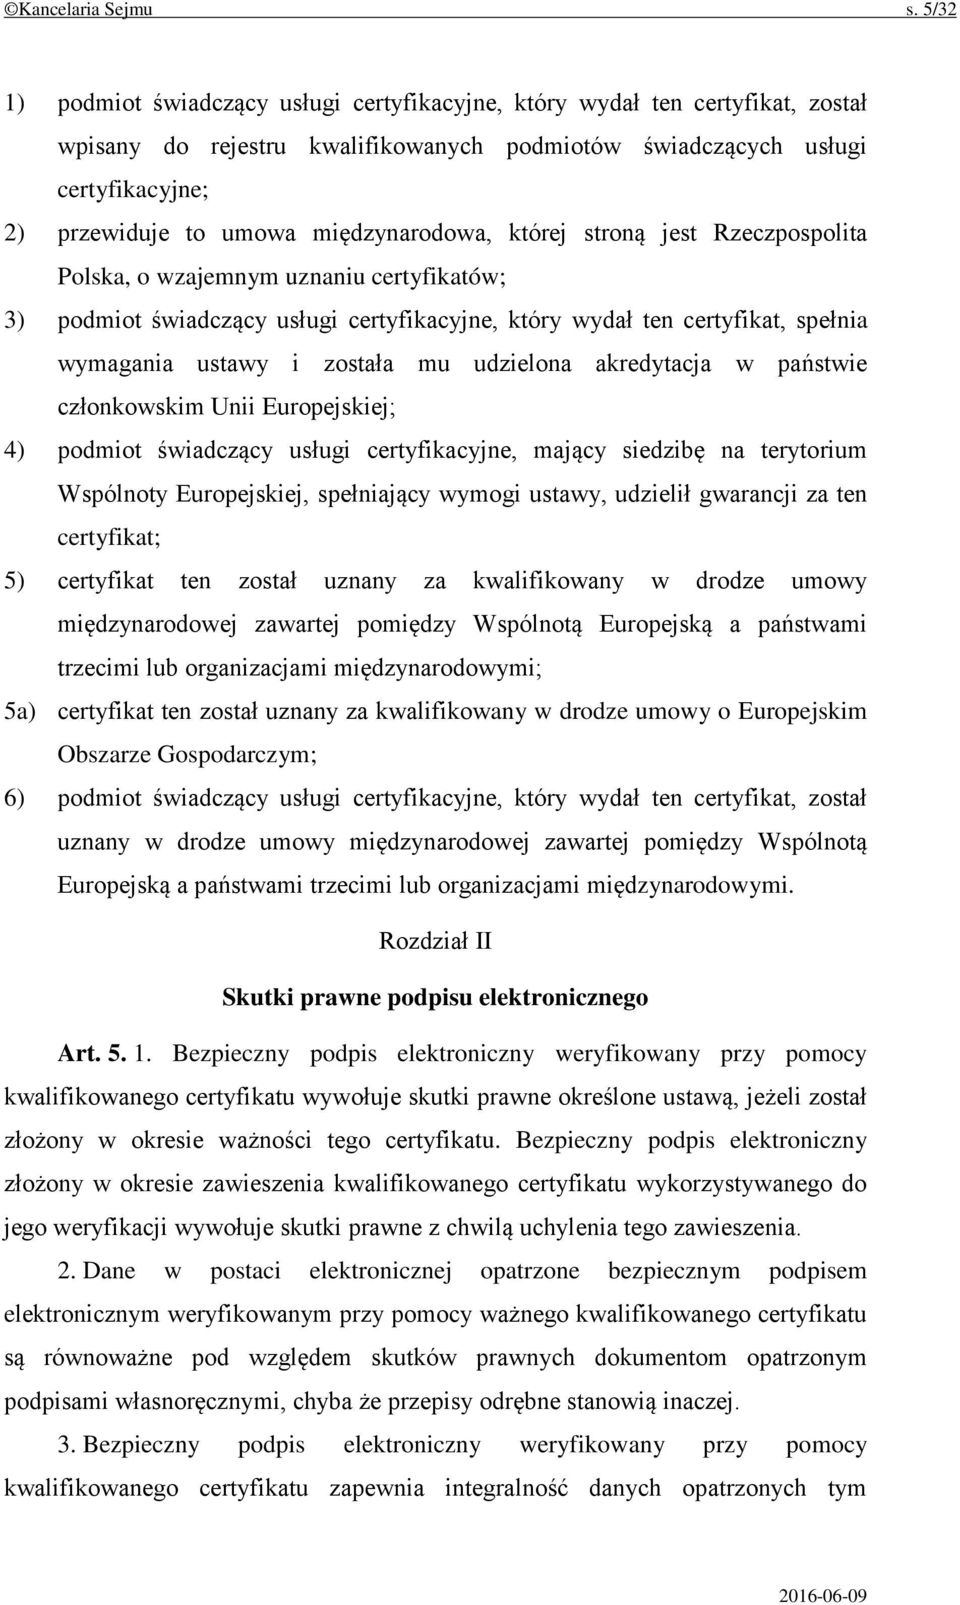 międzynarodowa, której stroną jest Rzeczpospolita Polska, o wzajemnym uznaniu certyfikatów; 3) podmiot świadczący usługi certyfikacyjne, który wydał ten certyfikat, spełnia wymagania ustawy i została